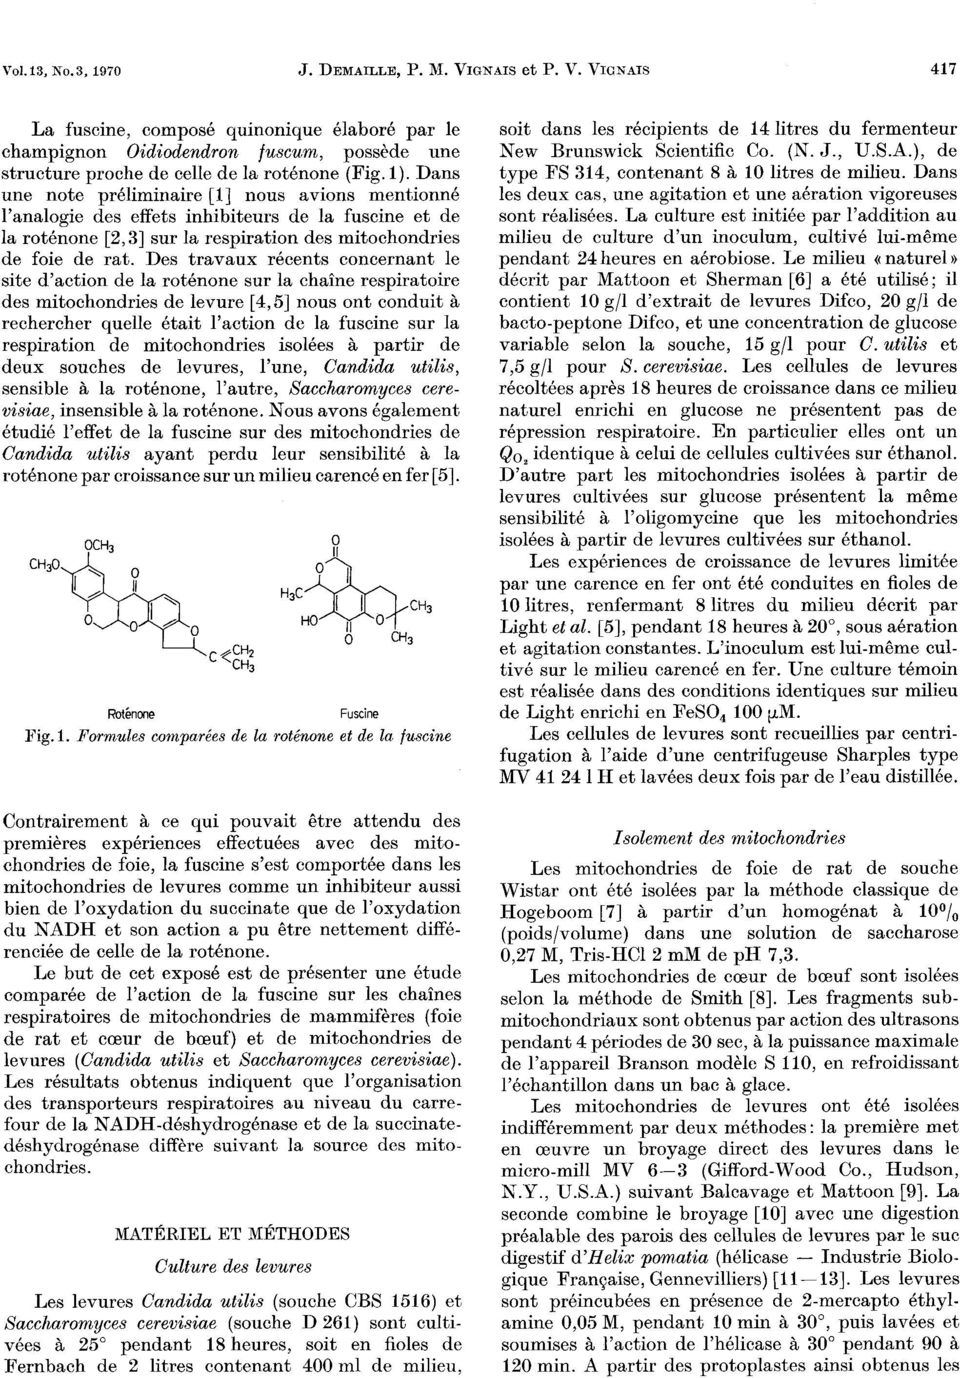 l analogie des effets inhibiteurs de la fuscine et de la rotenone [2,3] sur la respiration des mitochondries de foie de rat.